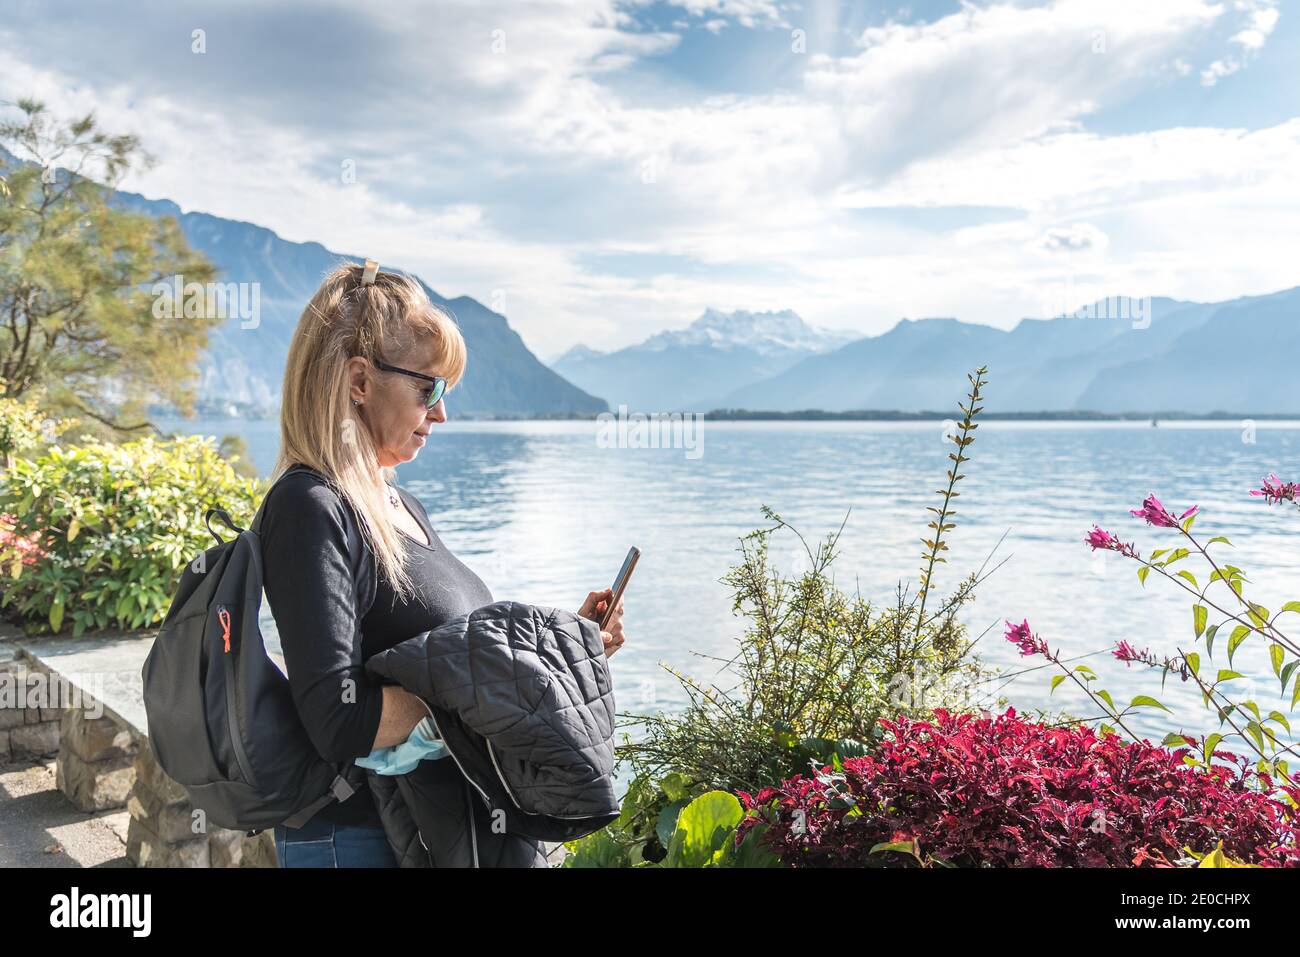 Femme blonde avec des lunettes de soleil et un sac utilisant son mobile avec un masque suspendu de son bras devant un lac entouré de montagnes. Montreux à Genev Banque D'Images